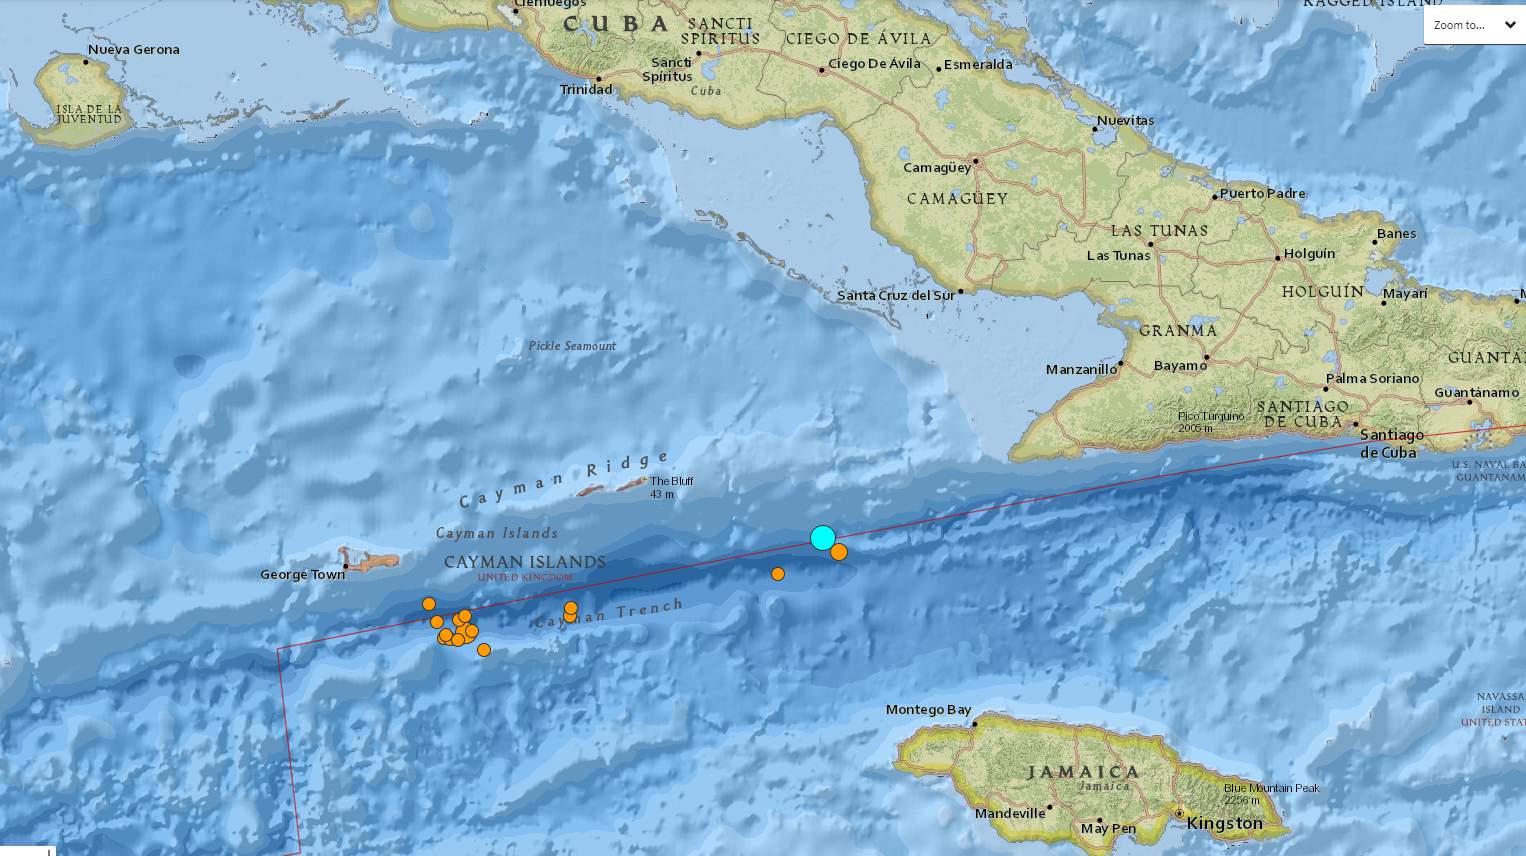 Caribbean earthquake felt in Hilliard, across nation